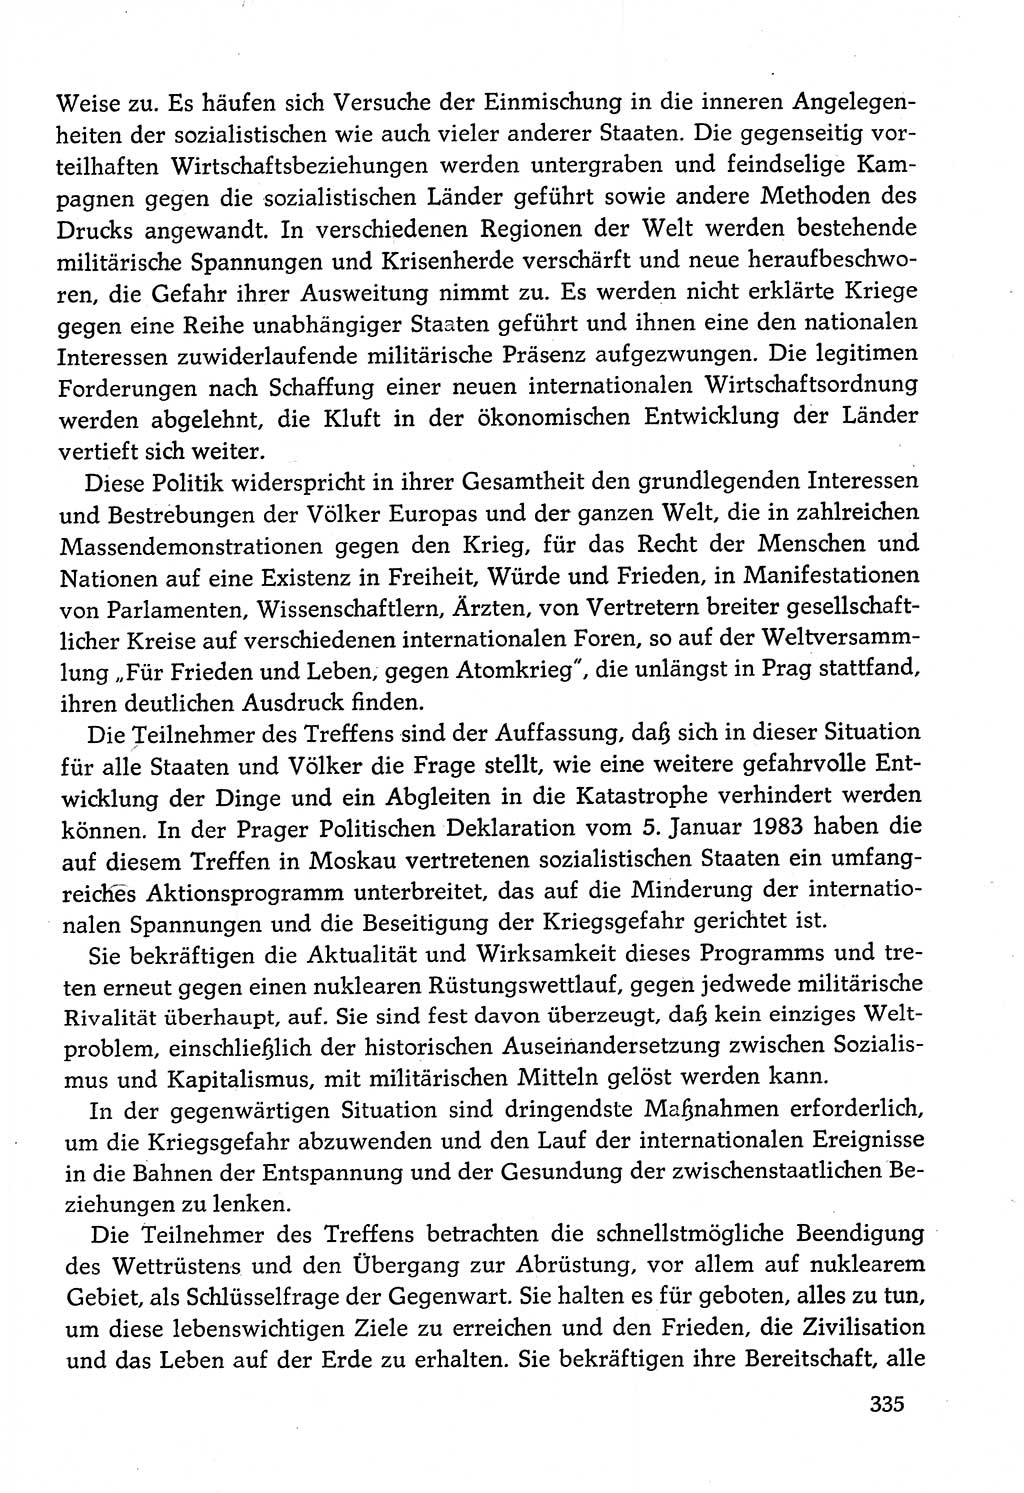 Dokumente der Sozialistischen Einheitspartei Deutschlands (SED) [Deutsche Demokratische Republik (DDR)] 1982-1983, Seite 335 (Dok. SED DDR 1982-1983, S. 335)